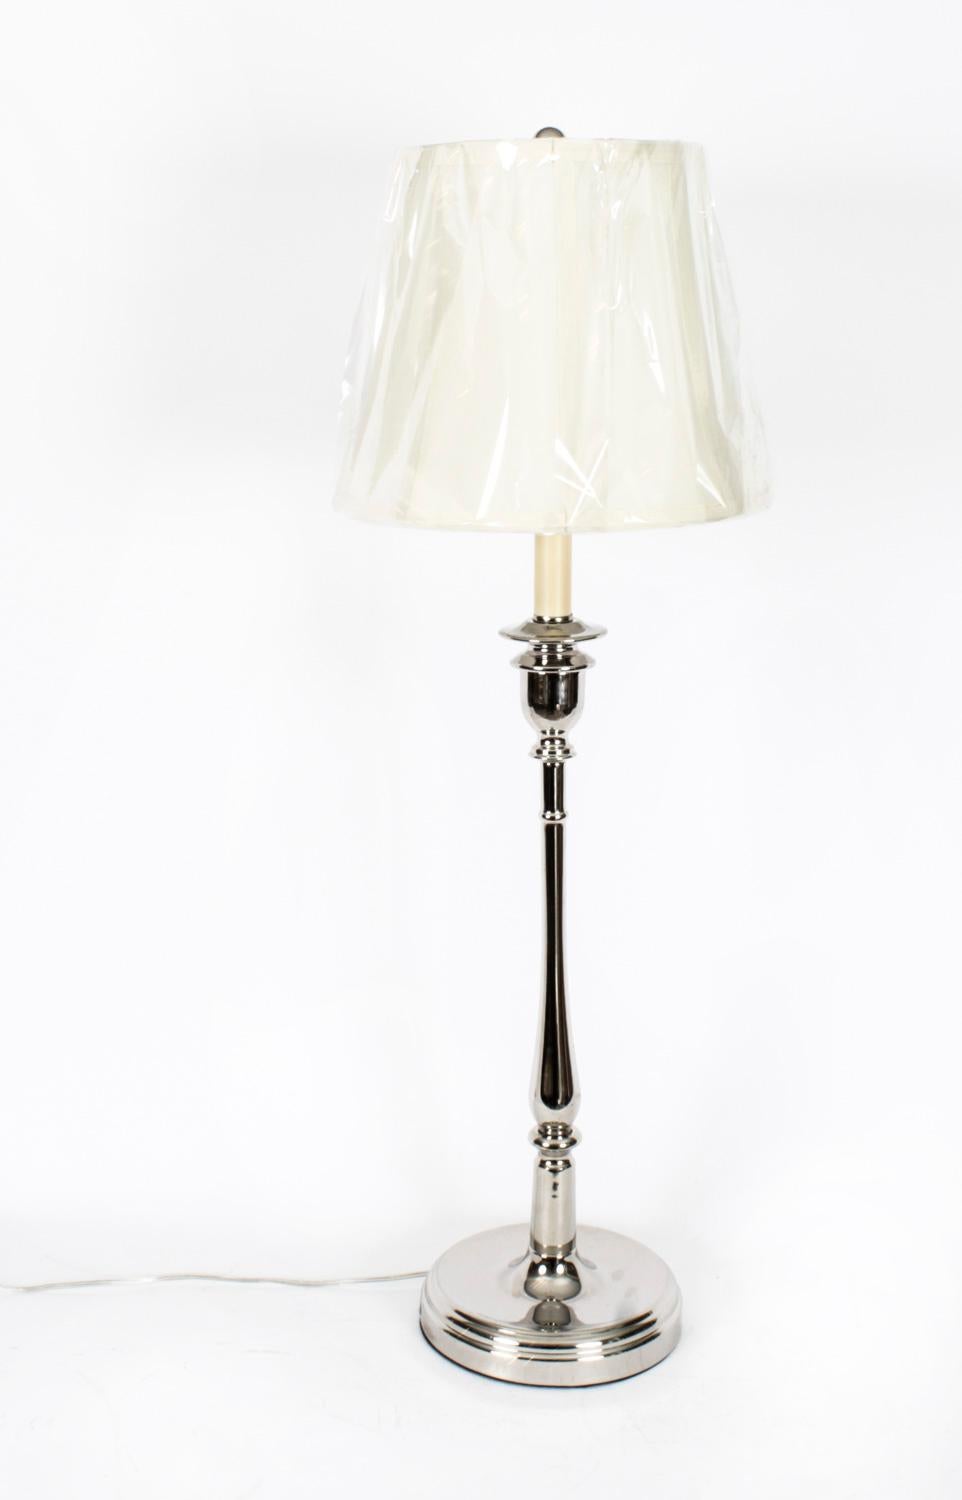 Il s'agit d'une paire de lampes de table chromées Ralph Lauren très attrayante et élégante, datant de la fin du 20e siècle.
 
Cette splendide paire est fabriquée en nickel poli et montée sur une base circulaire.
 
La qualité de l'artisanat est